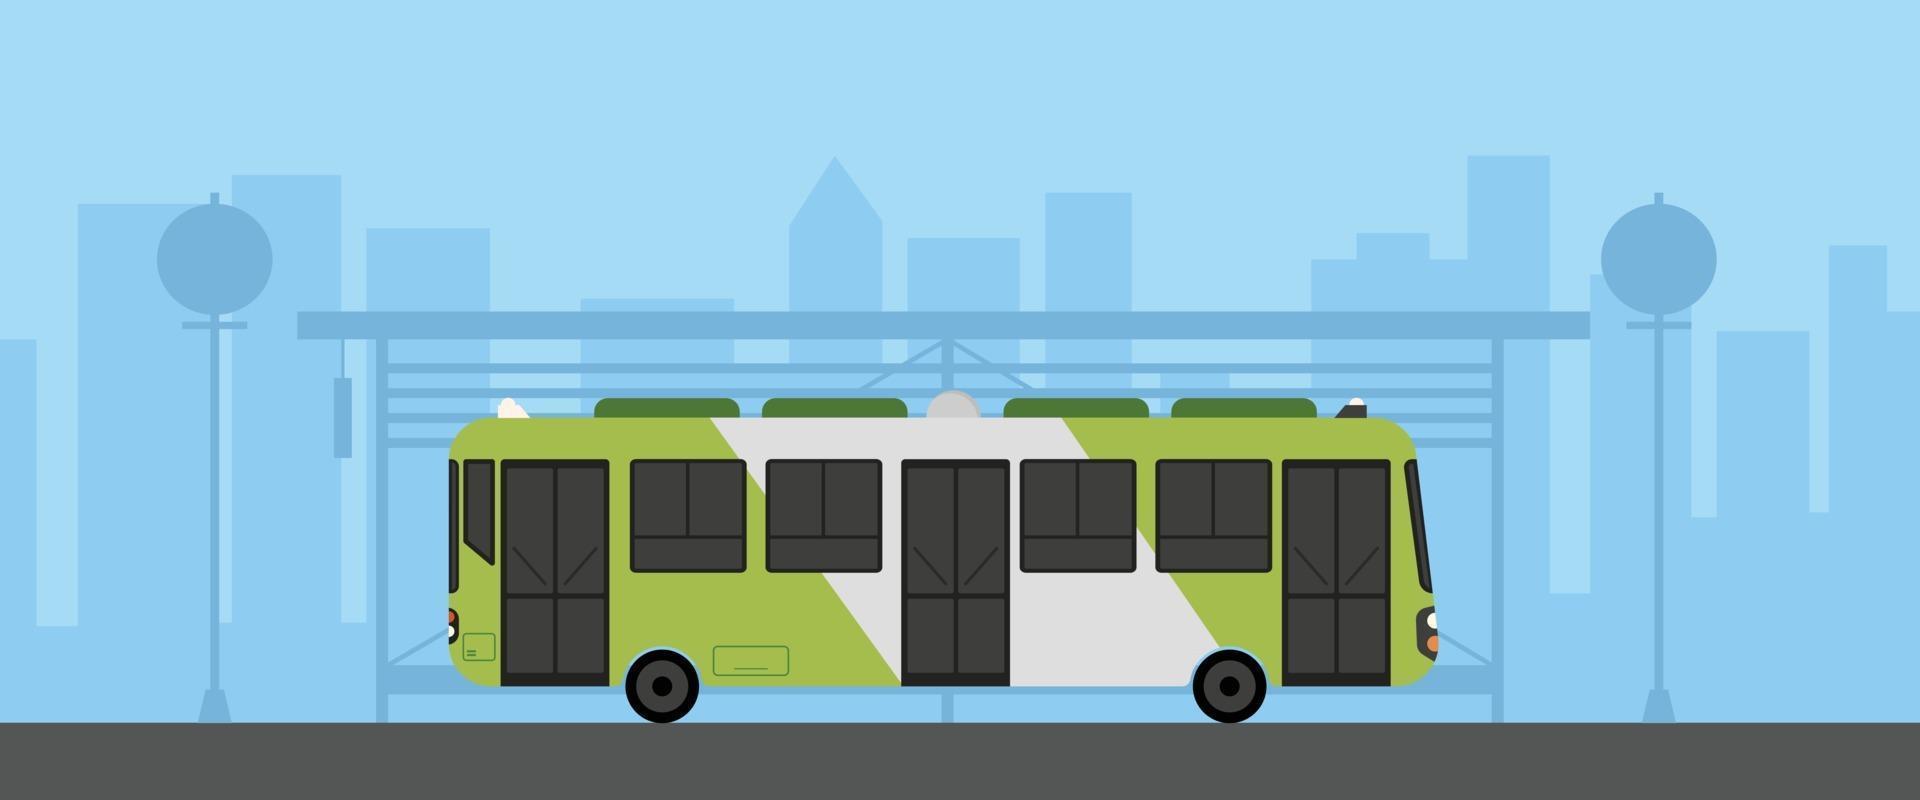 Flacher grüner Bus mit Bushaltestelle in der städtischen Szene-Vektorillustration. Bus auf der Hauptstraße mit Stadtbild. Stadt mit Bushaltestelle vektor